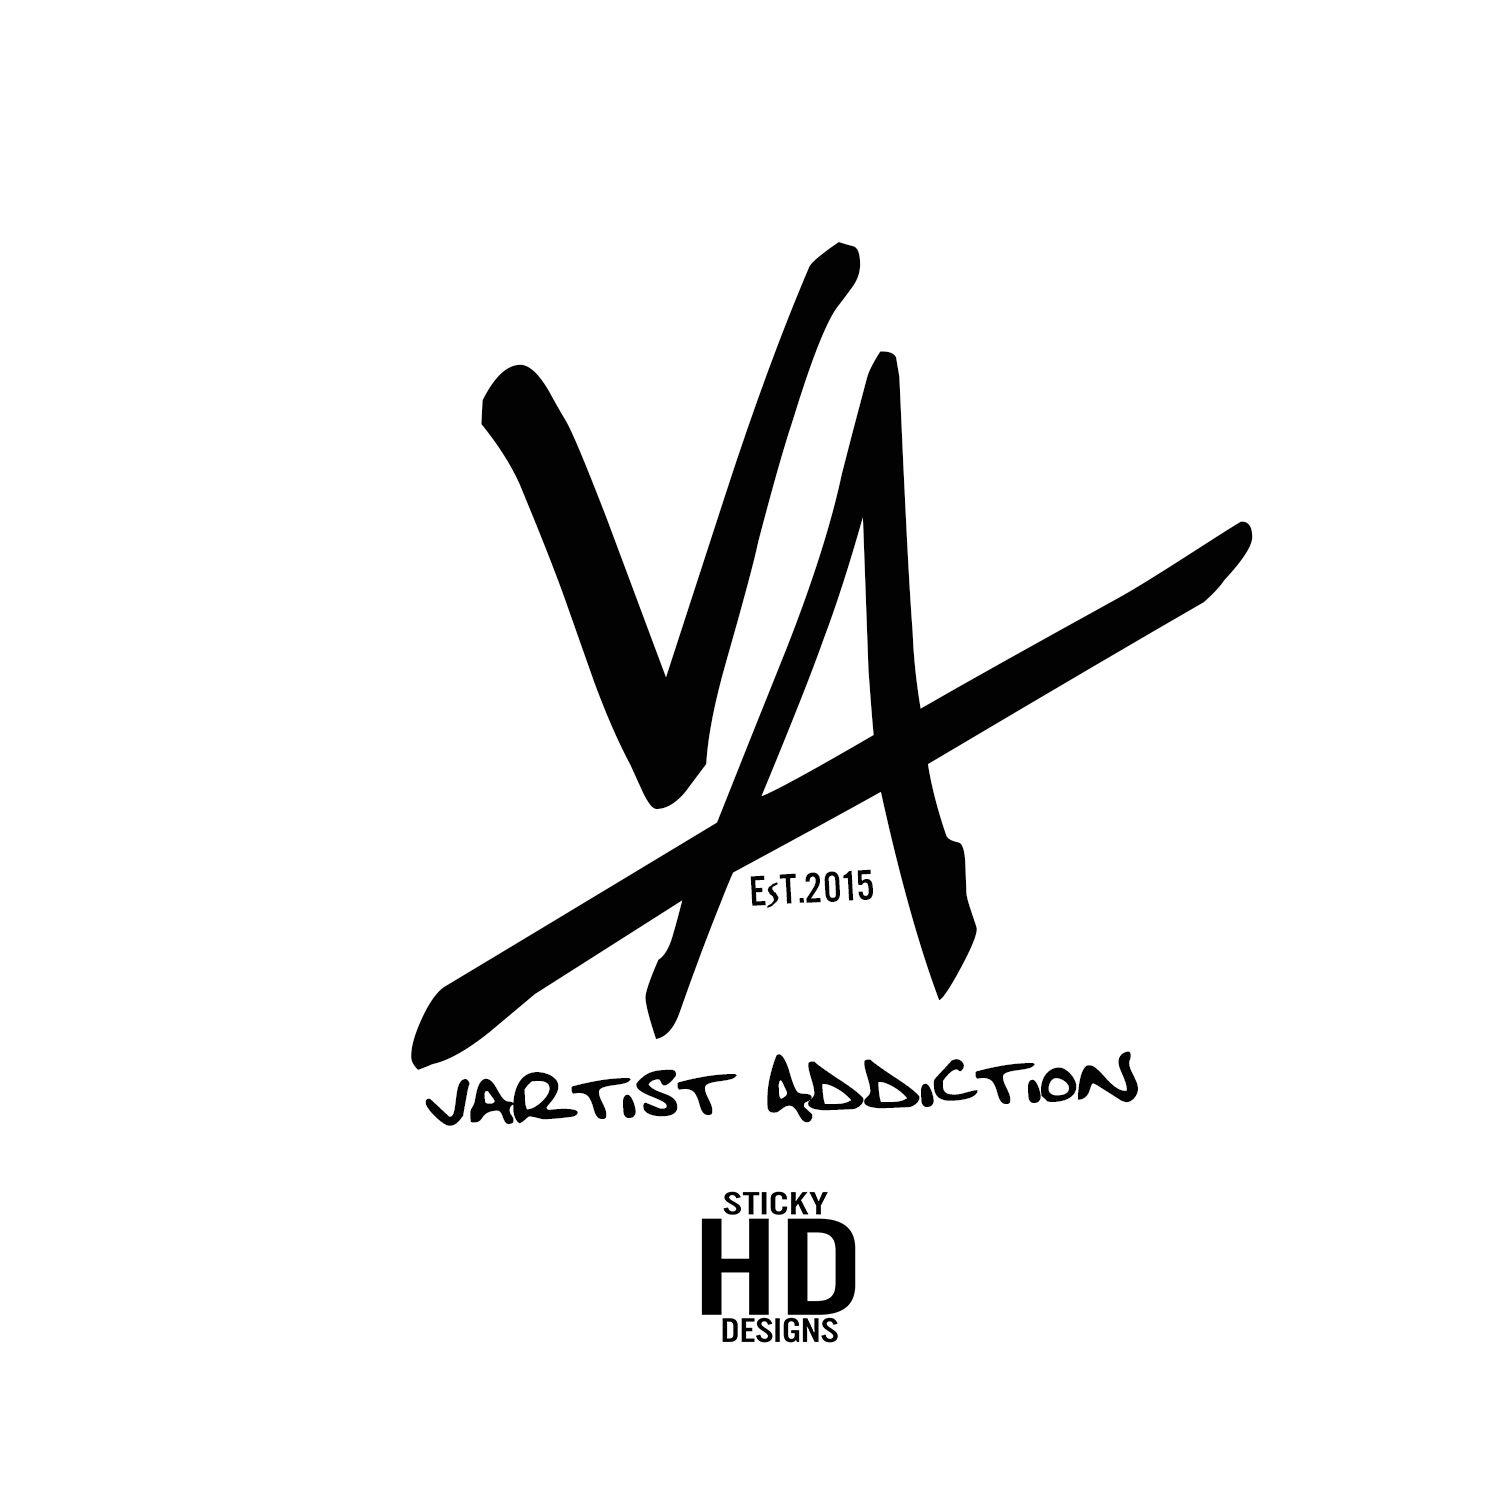 VA Logo - Va Logos